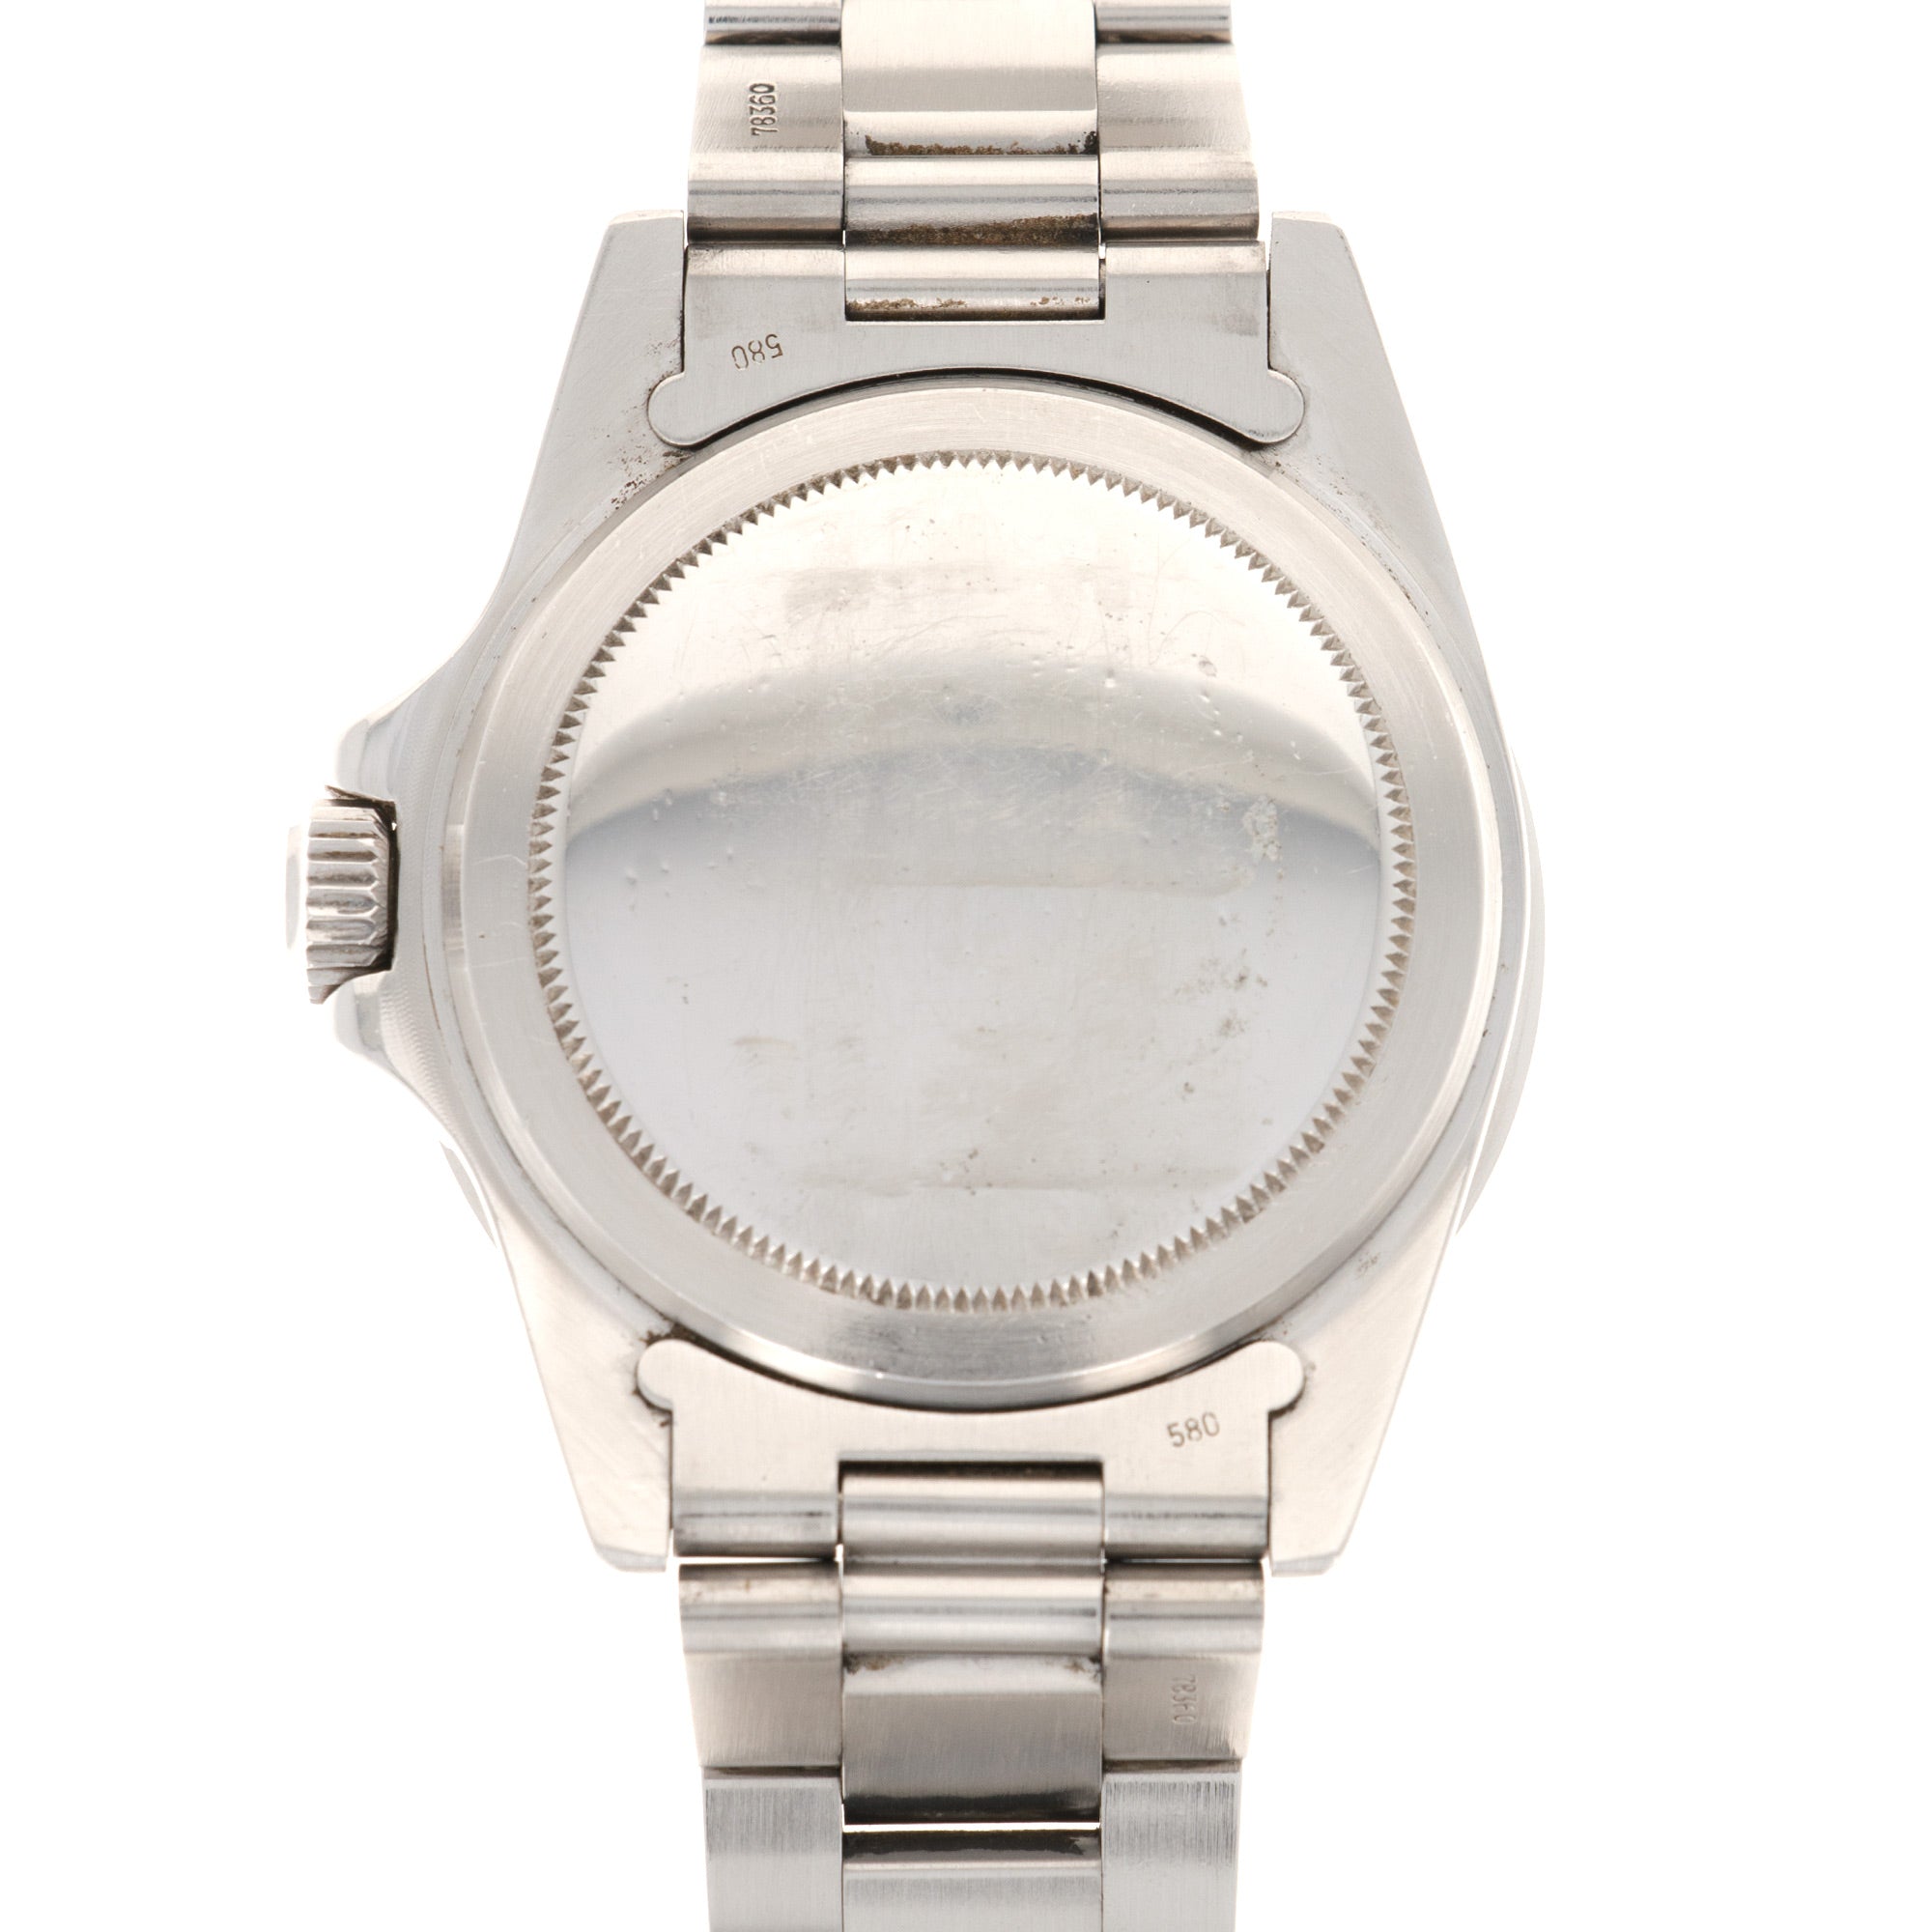 Rolex - Rolex Submariner Watch Ref. 5513, Circa 1970 - The Keystone Watches